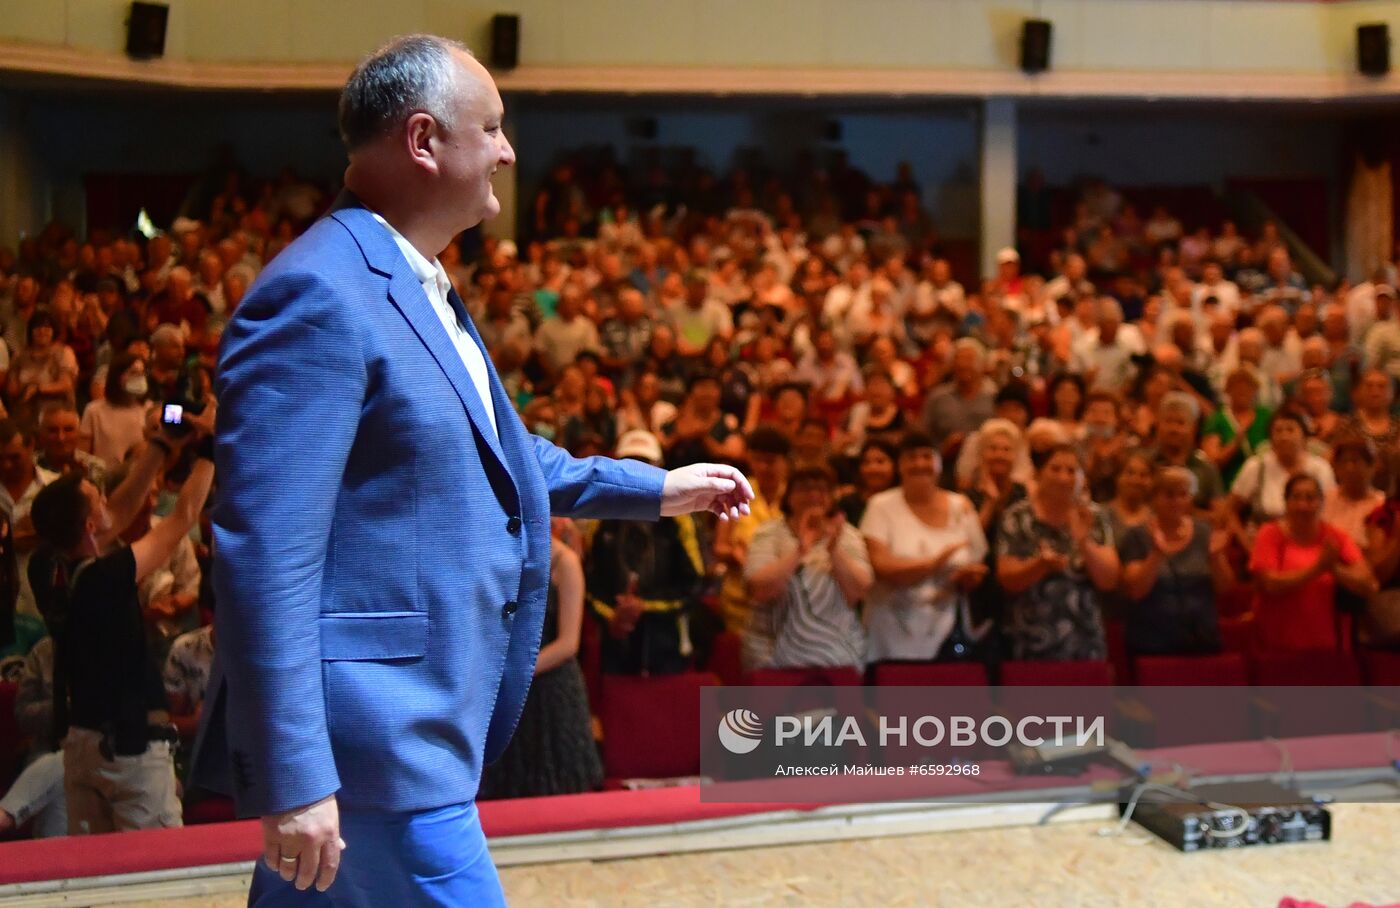 Предвыборная поездка лидера ПСРМ И. Додона по стране